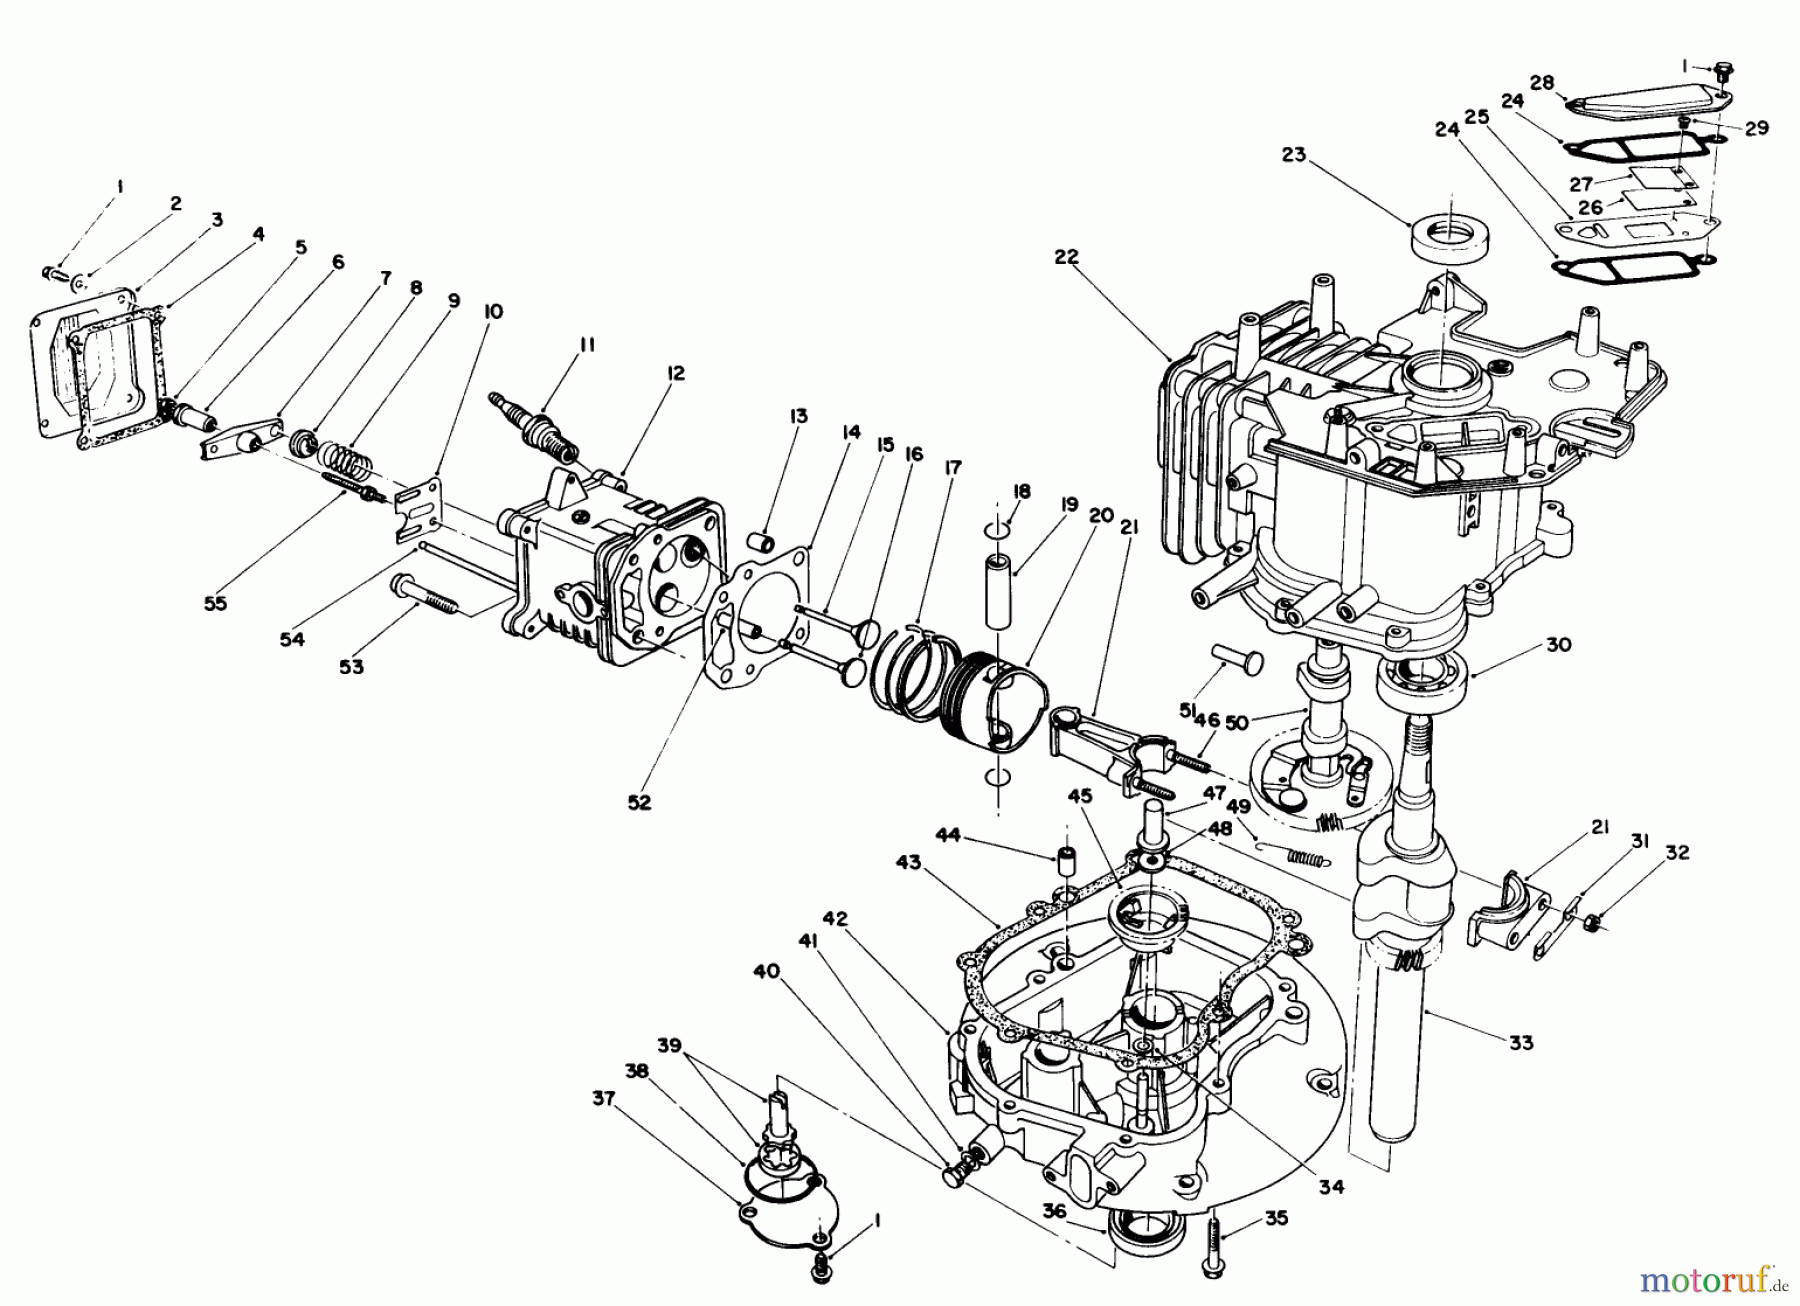  Toro Neu Mowers, Walk-Behind Seite 1 20526C - Toro Lawnmower, 1989 (9000001-9999999) ENGINE ASSEMBLY (MODEL NO. VMG6)